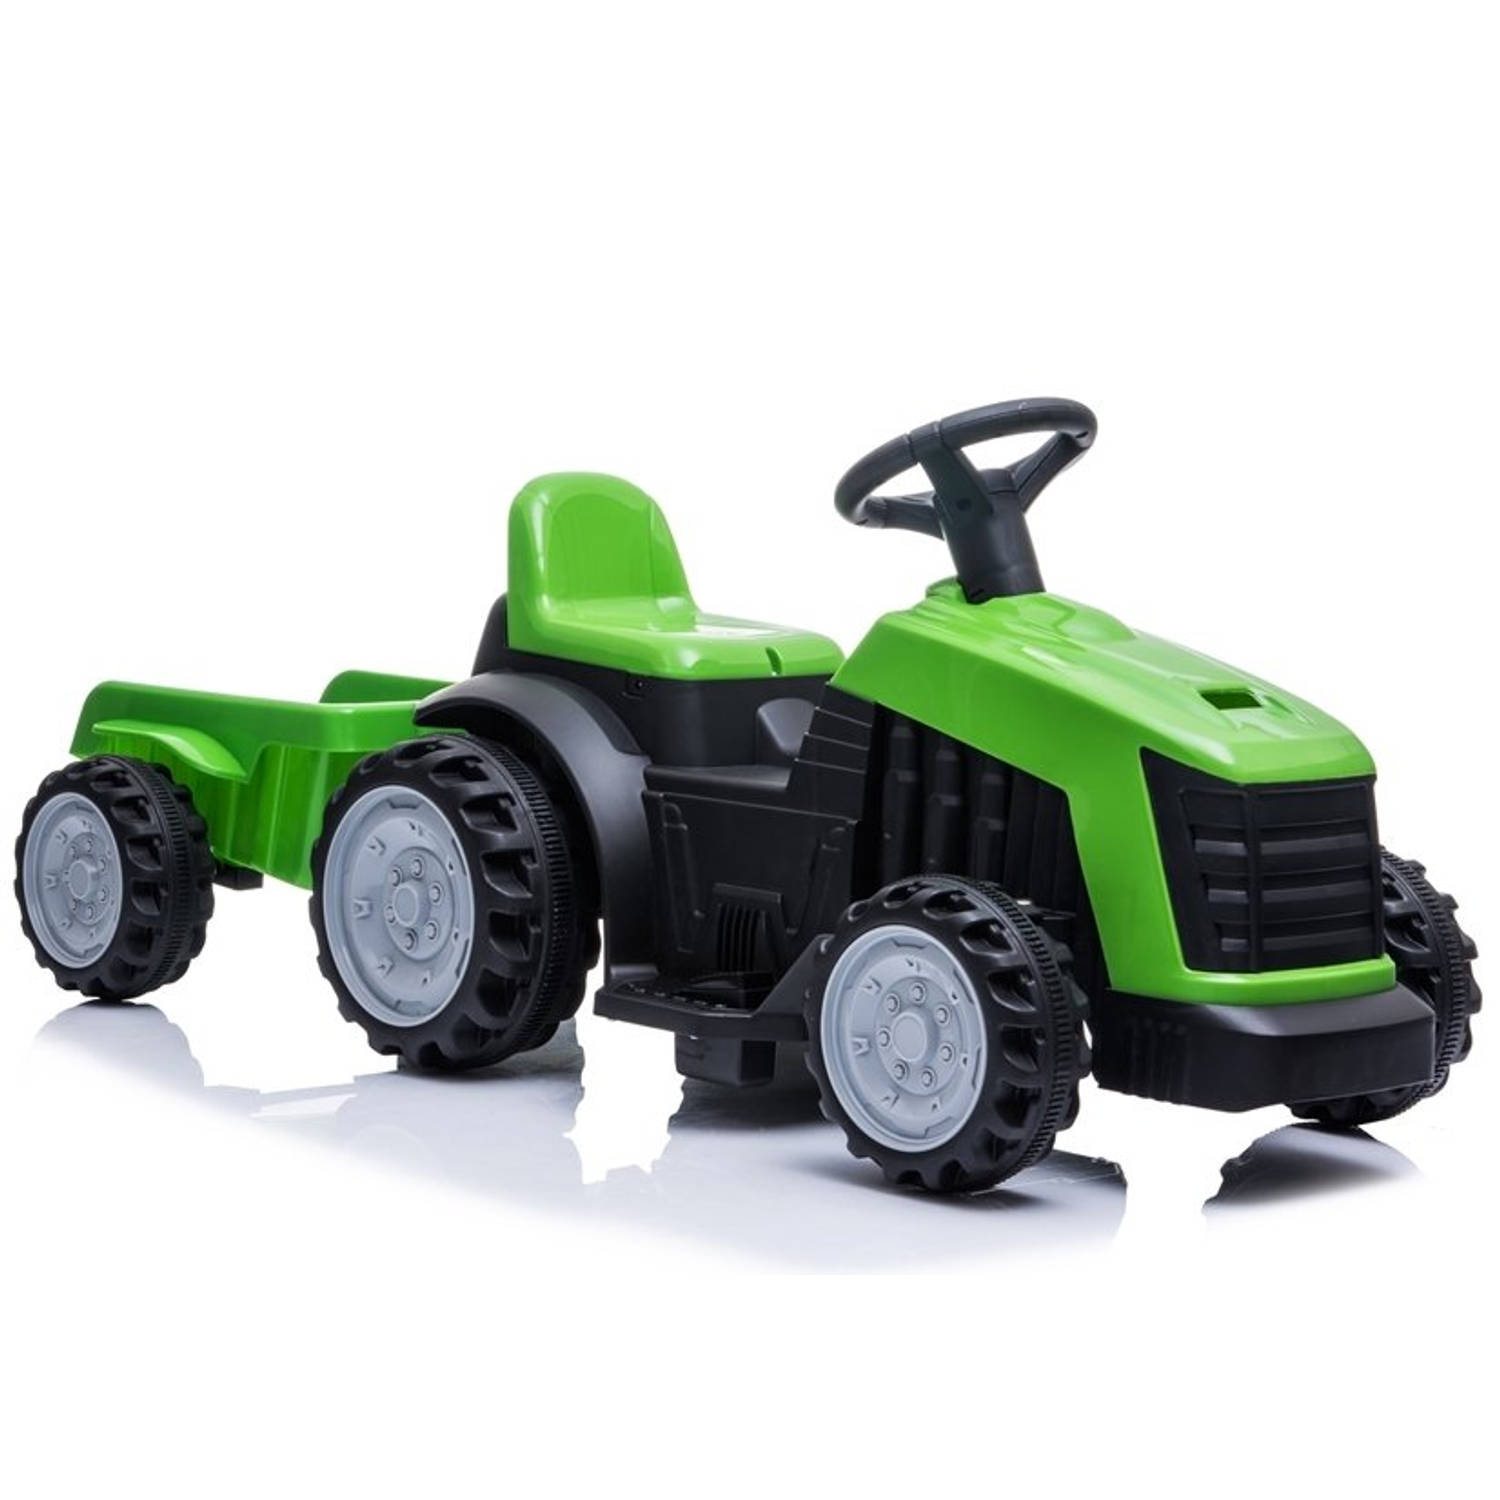 Elektrische kinder tractor groen met trailer - accu voertuig voor kinderen tot 25kg max 2 - 4km/h - inclusief aanhanger - 6V - voor en achteruit - remt automatisch al gas word losg